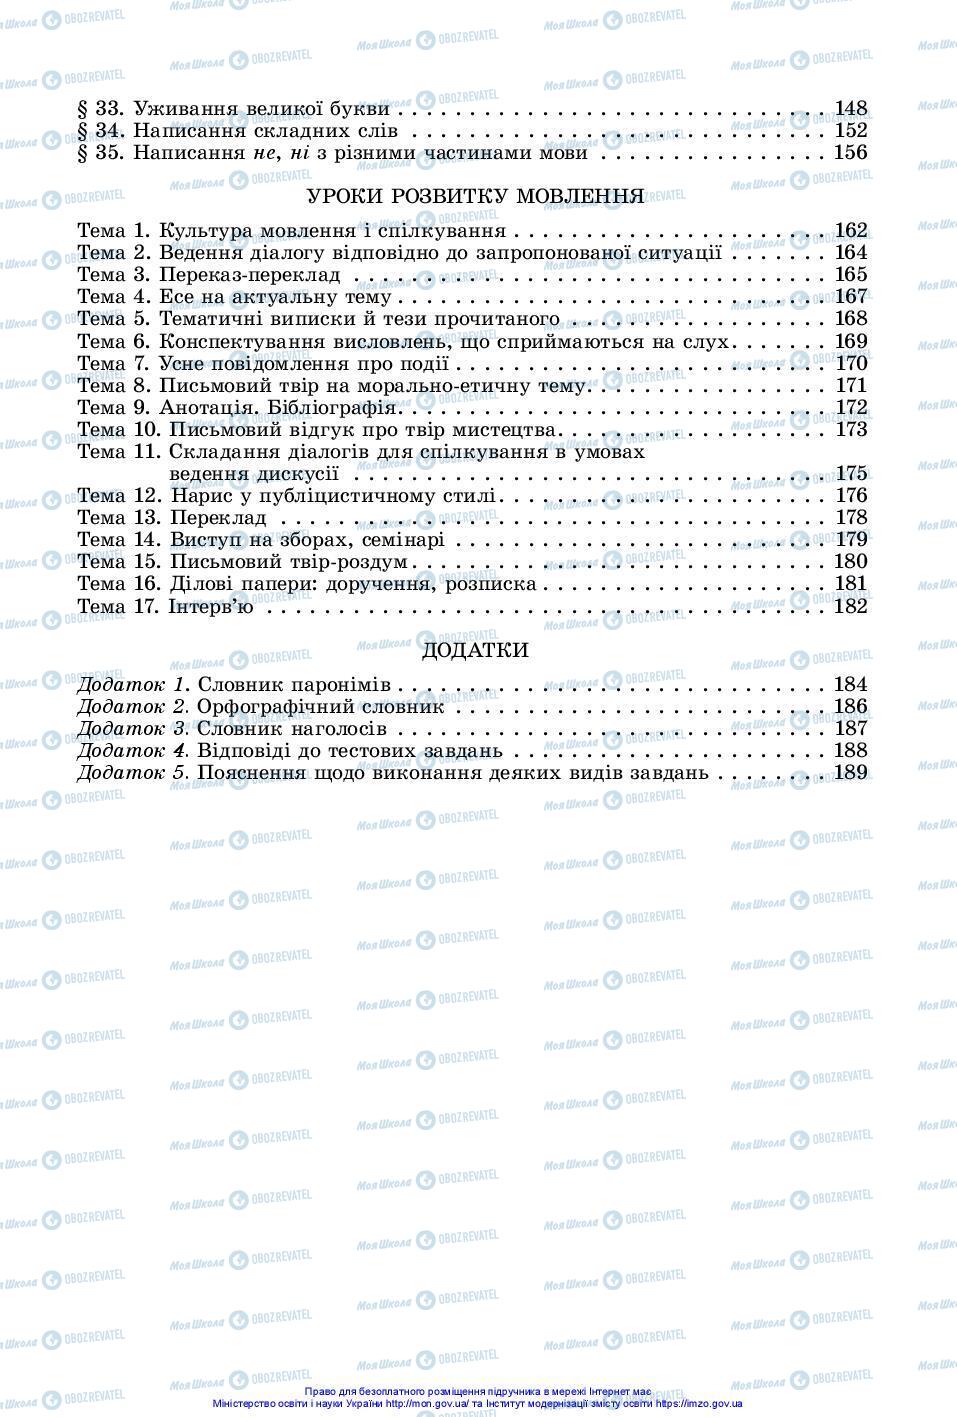 Підручники Українська мова 10 клас сторінка 191